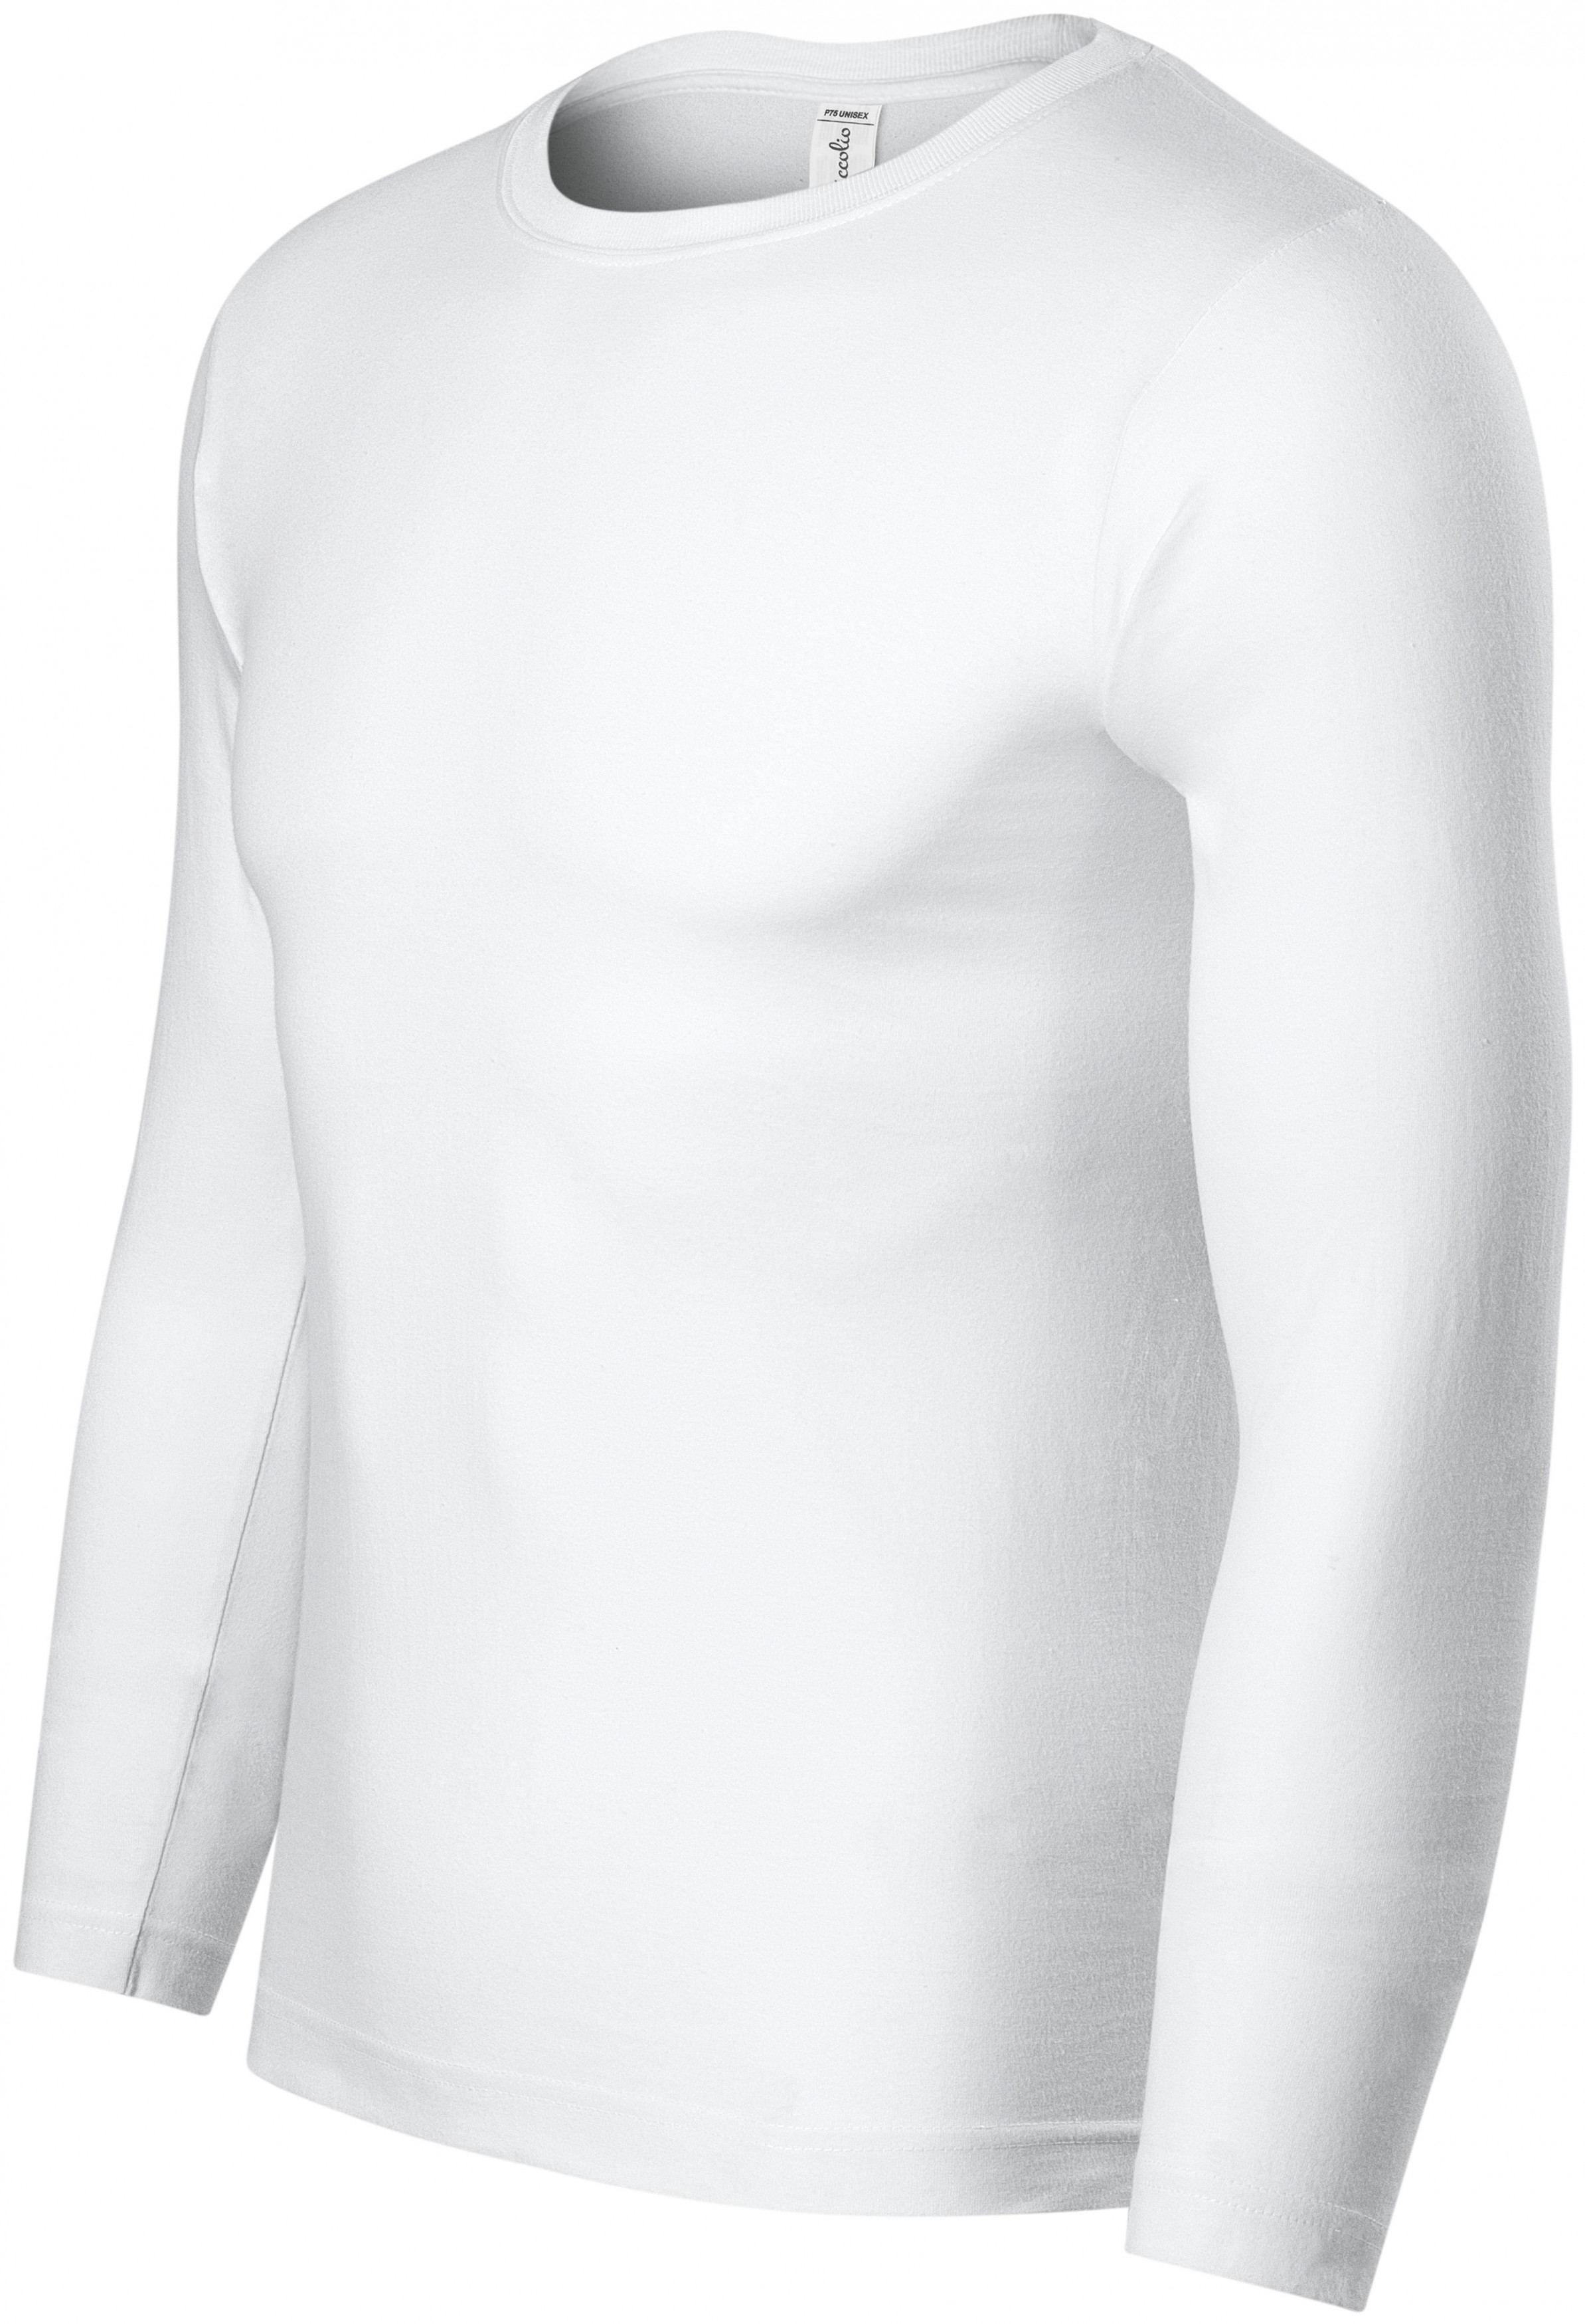 Tričko s dlhým rukávom, ľahšie, biela, XS